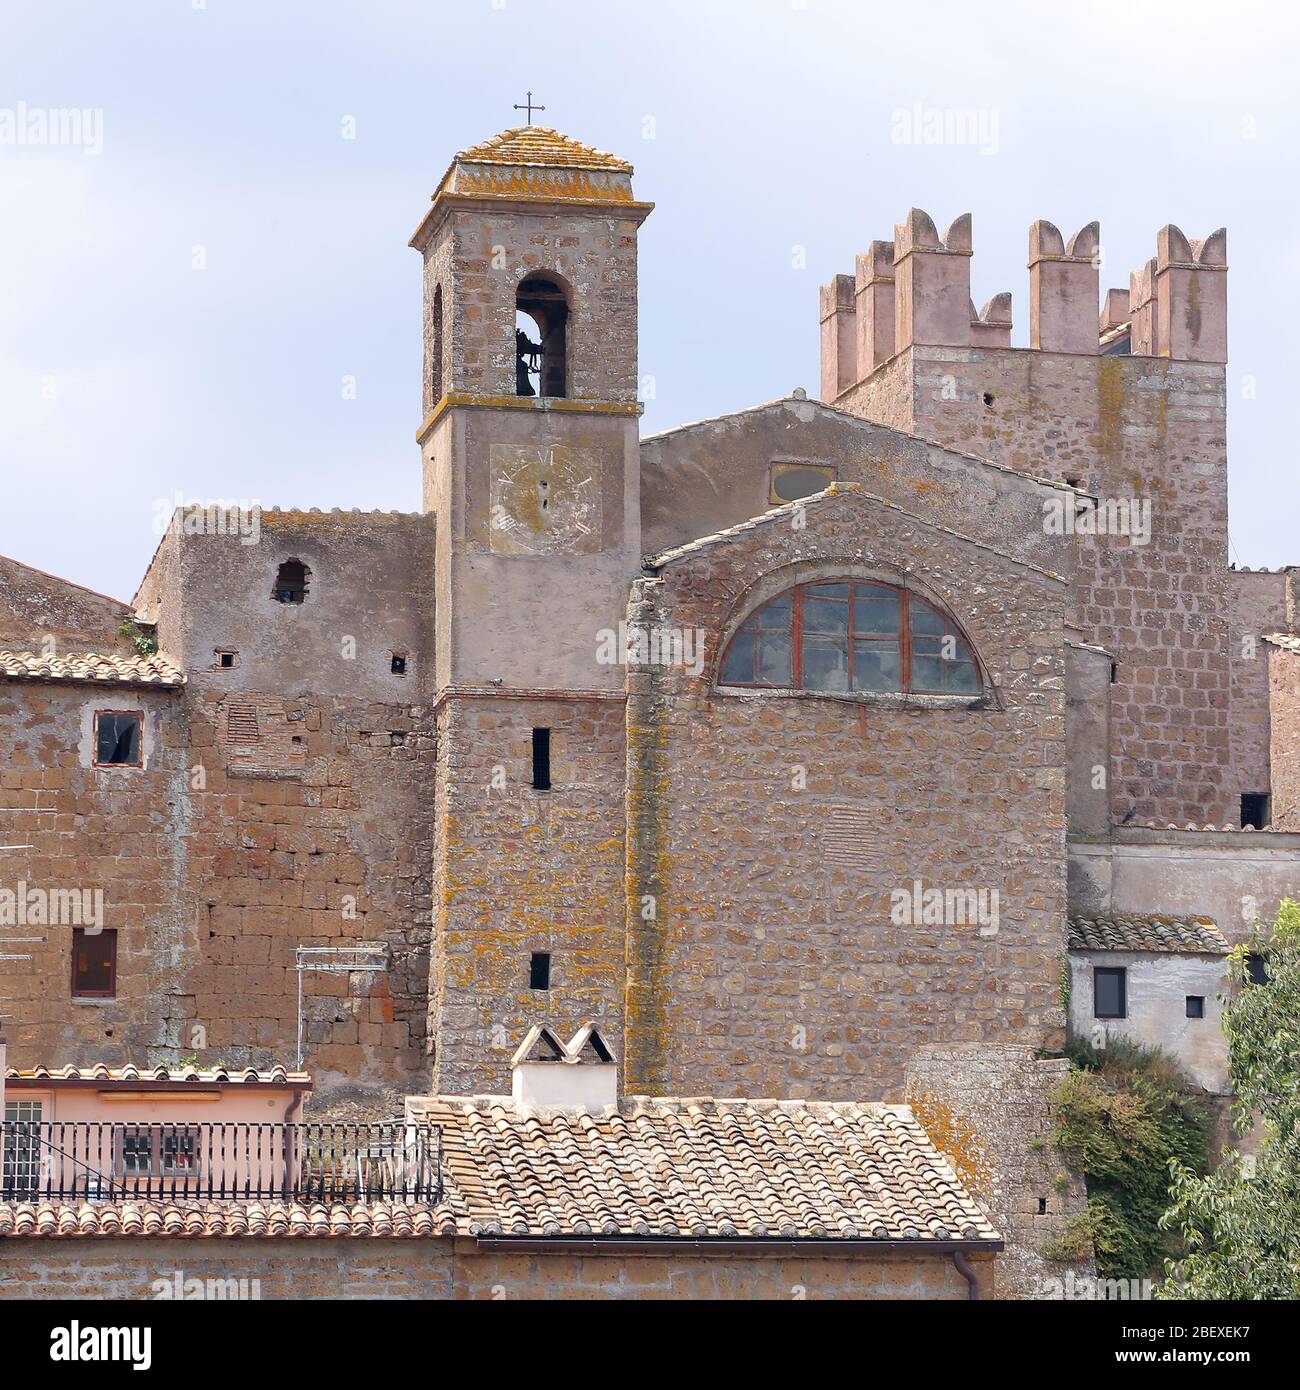 Calcata (VITERBO), Italia - 27 luglio 2019: Calcata, comune e comune della provincia di Viterbo nella regione Lazio Foto Stock